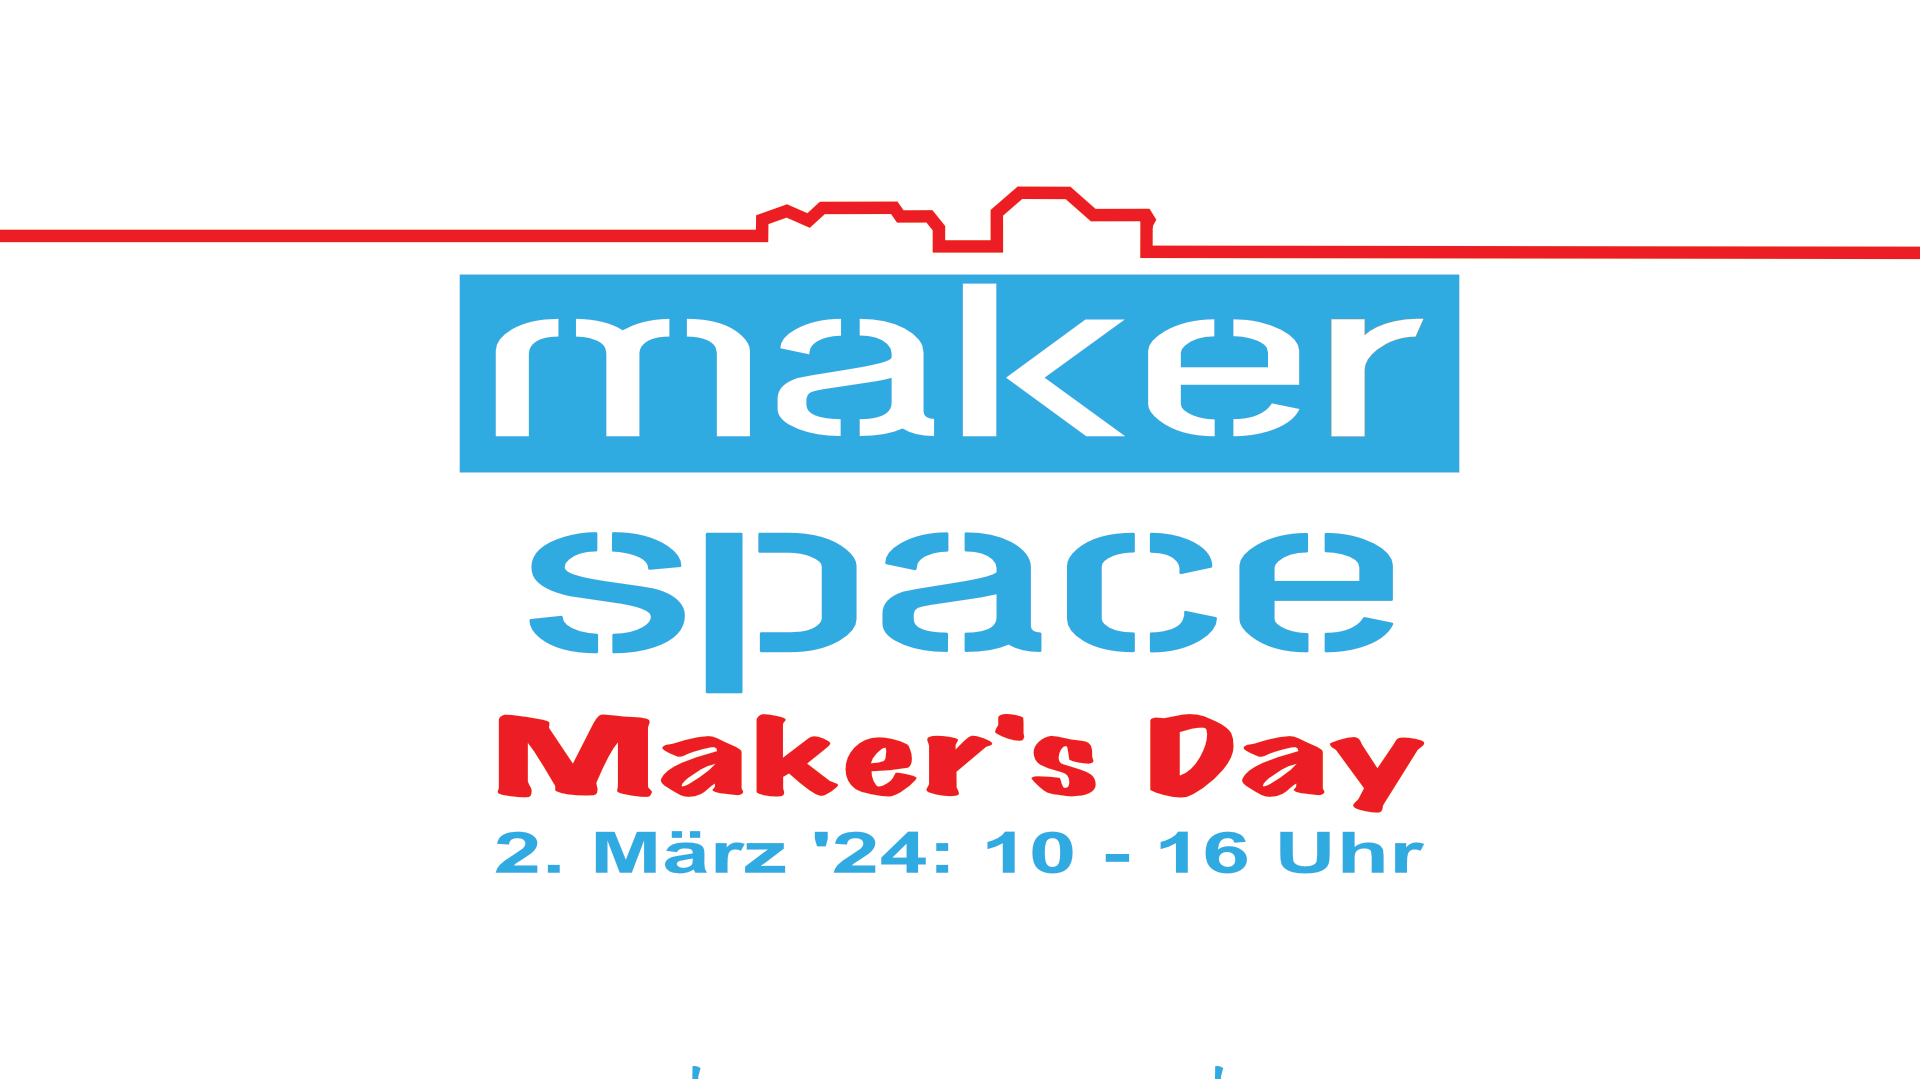 Banner zum Maker's Day unseres makerspaces am 2. März 2024 von 10 - 16 Uhr